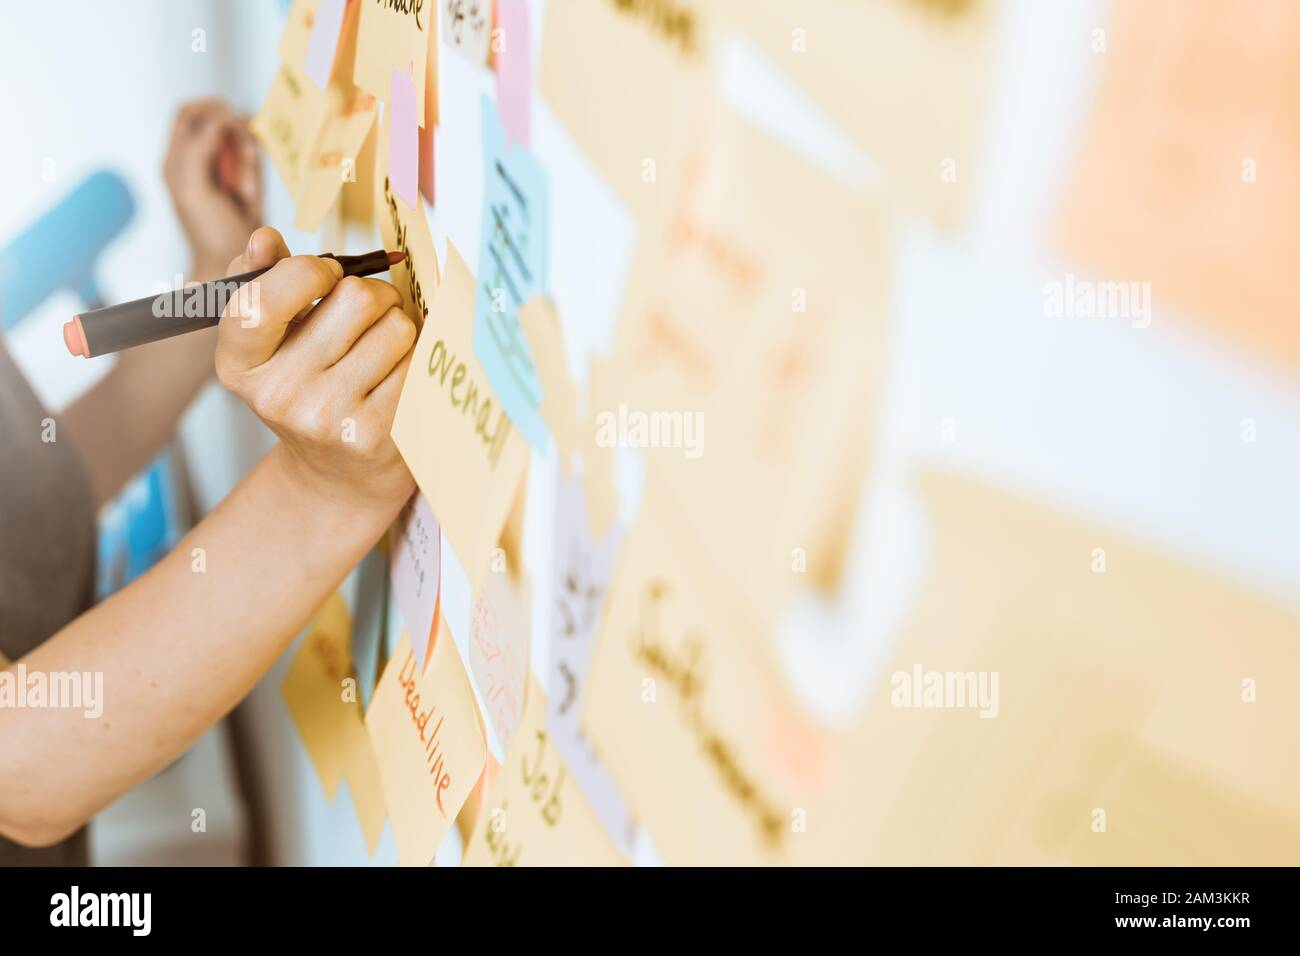 Les gens d'affaires utilisent des notes adhésives post, écrivant des idées. Travail D'Équipe. Banque D'Images